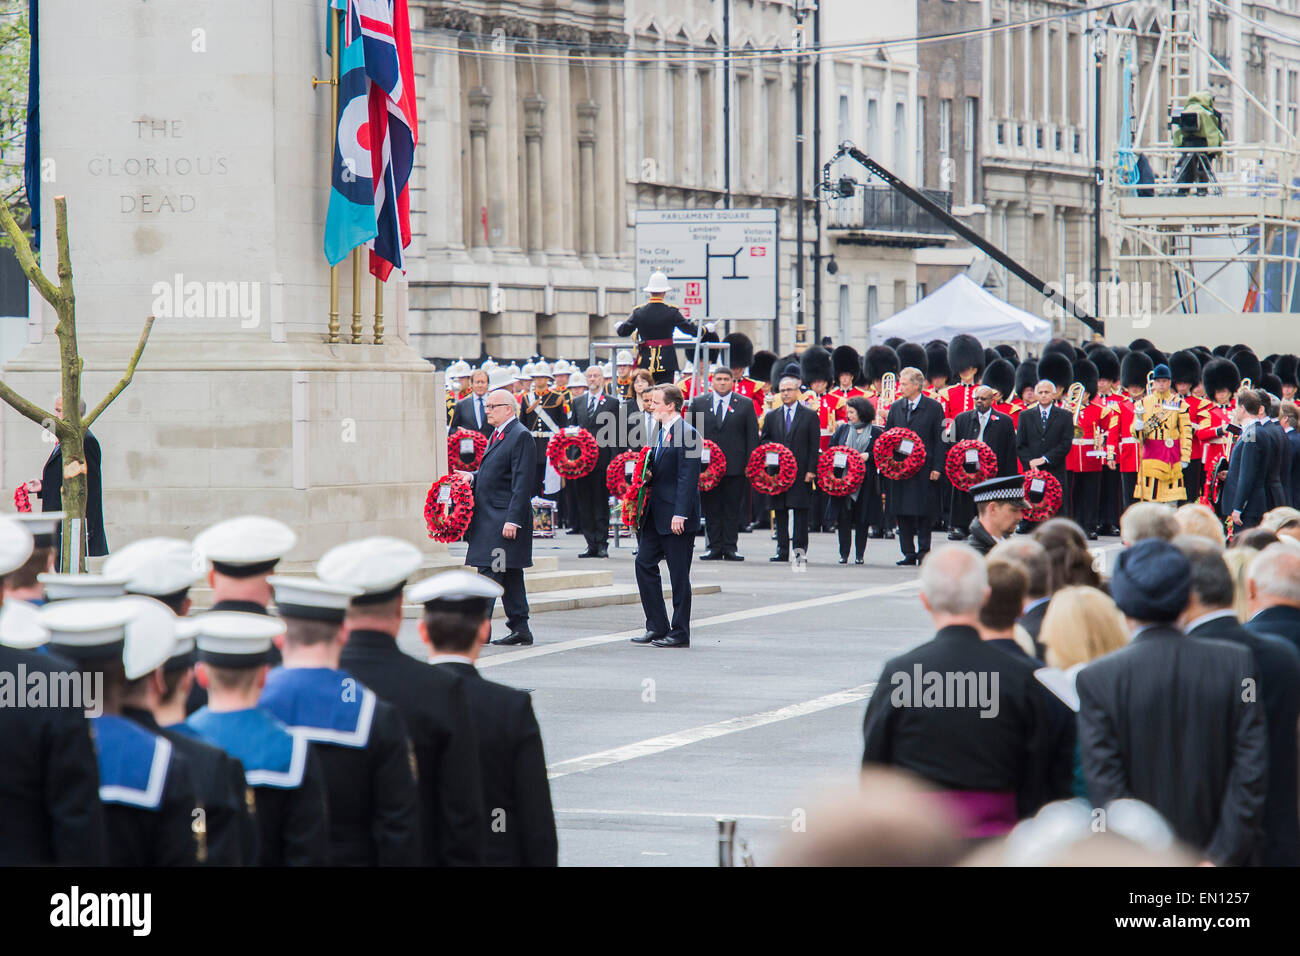 David Cameron durchführt seinen Kranz. Eine Gedenkfeier in London anlässlich die Hundertjahrfeier der Gallipoli Kampagne 25. April 2015 am Ehrenmal am Whitehall, Westminster. Nachkommen derer, die in der Kampagne gekämpft marschieren auch vorbei, unter der Leitung von militärischem Personal, als Teil der Zeremonie. Dies ist eine Ergänzung zu der üblichen jährlichen Zeremonie organisiert ByvThe hohe Provisionen von Australien und Neuseeland. Stockfoto